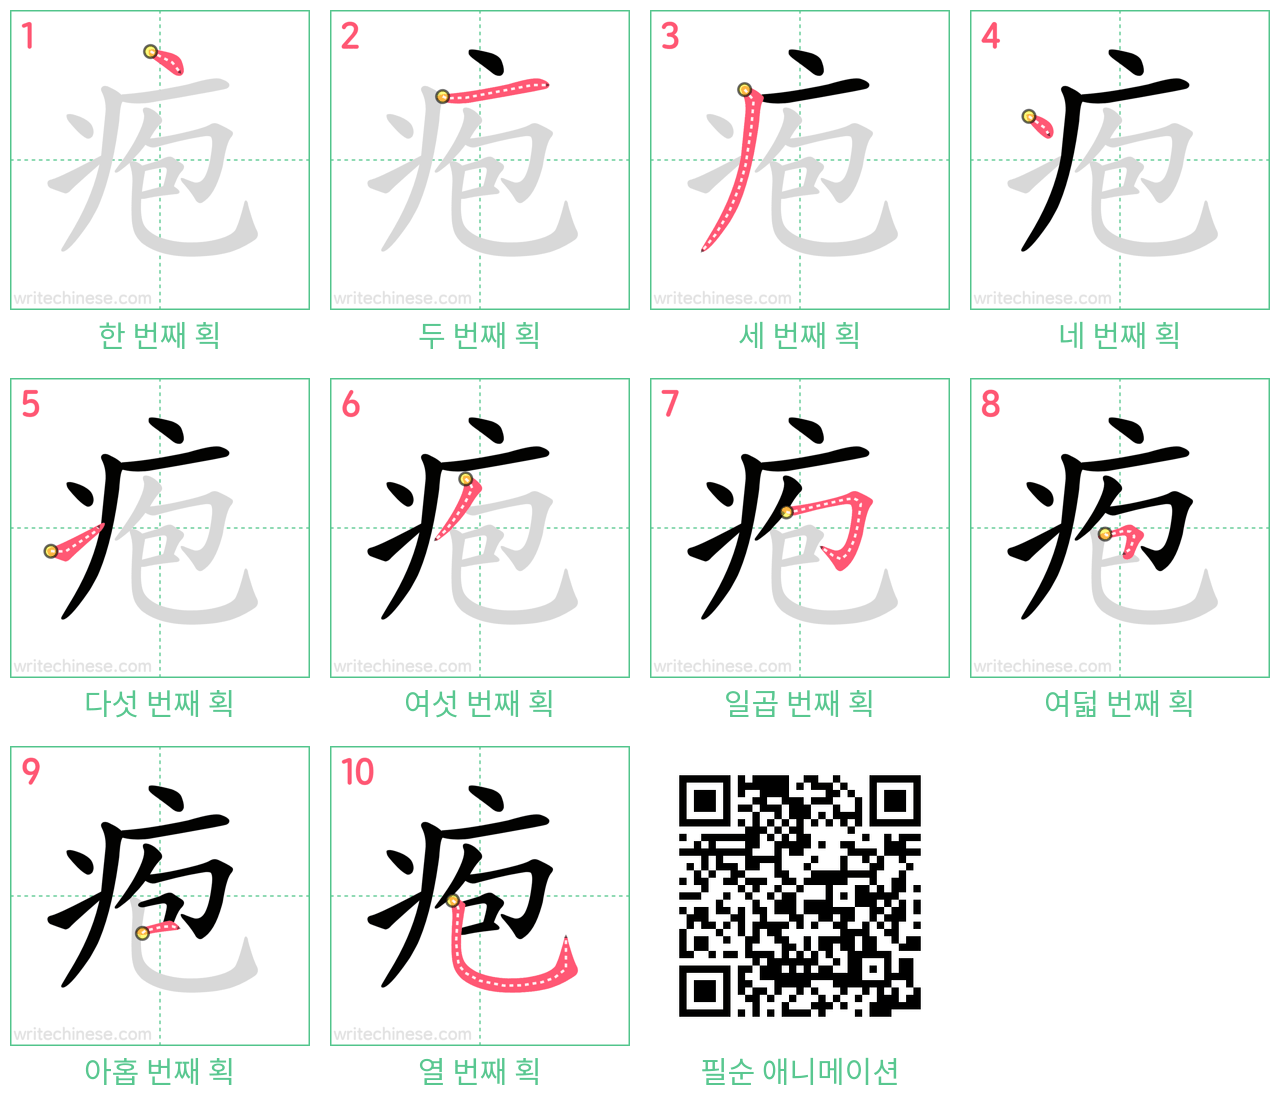 疱 step-by-step stroke order diagrams